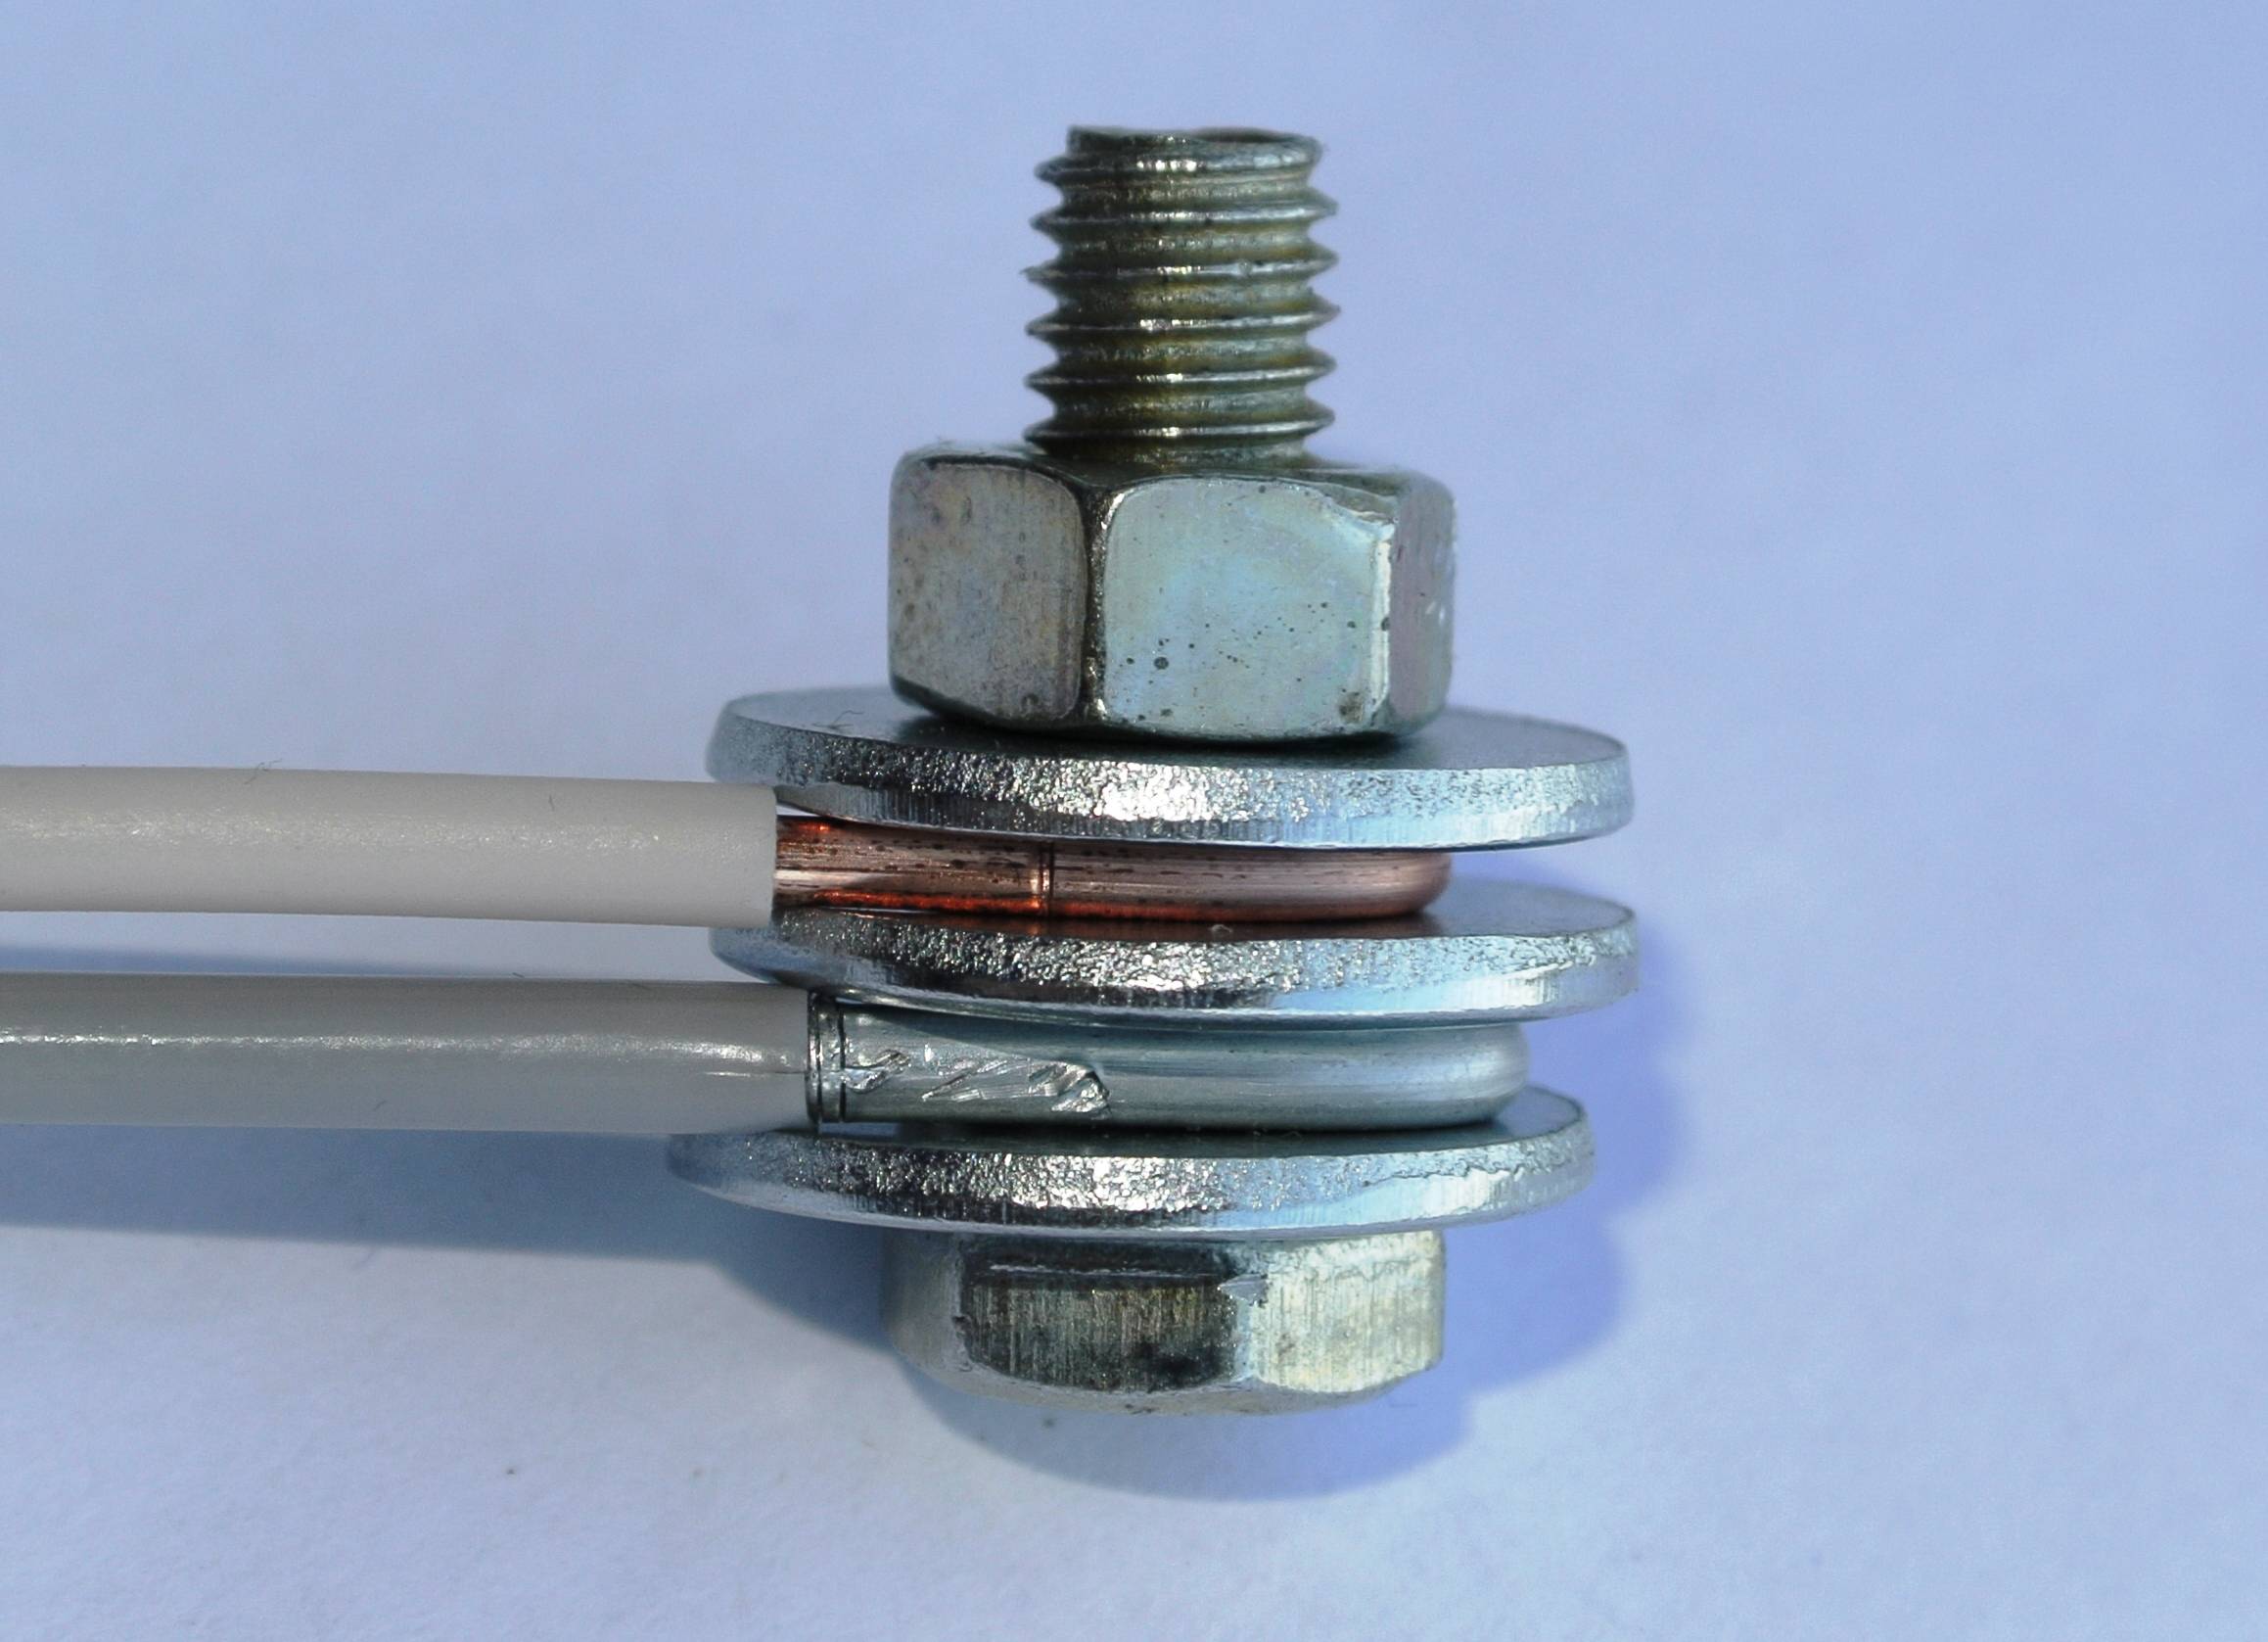 Соединяем медный и алюминиевый провода: как правильно?